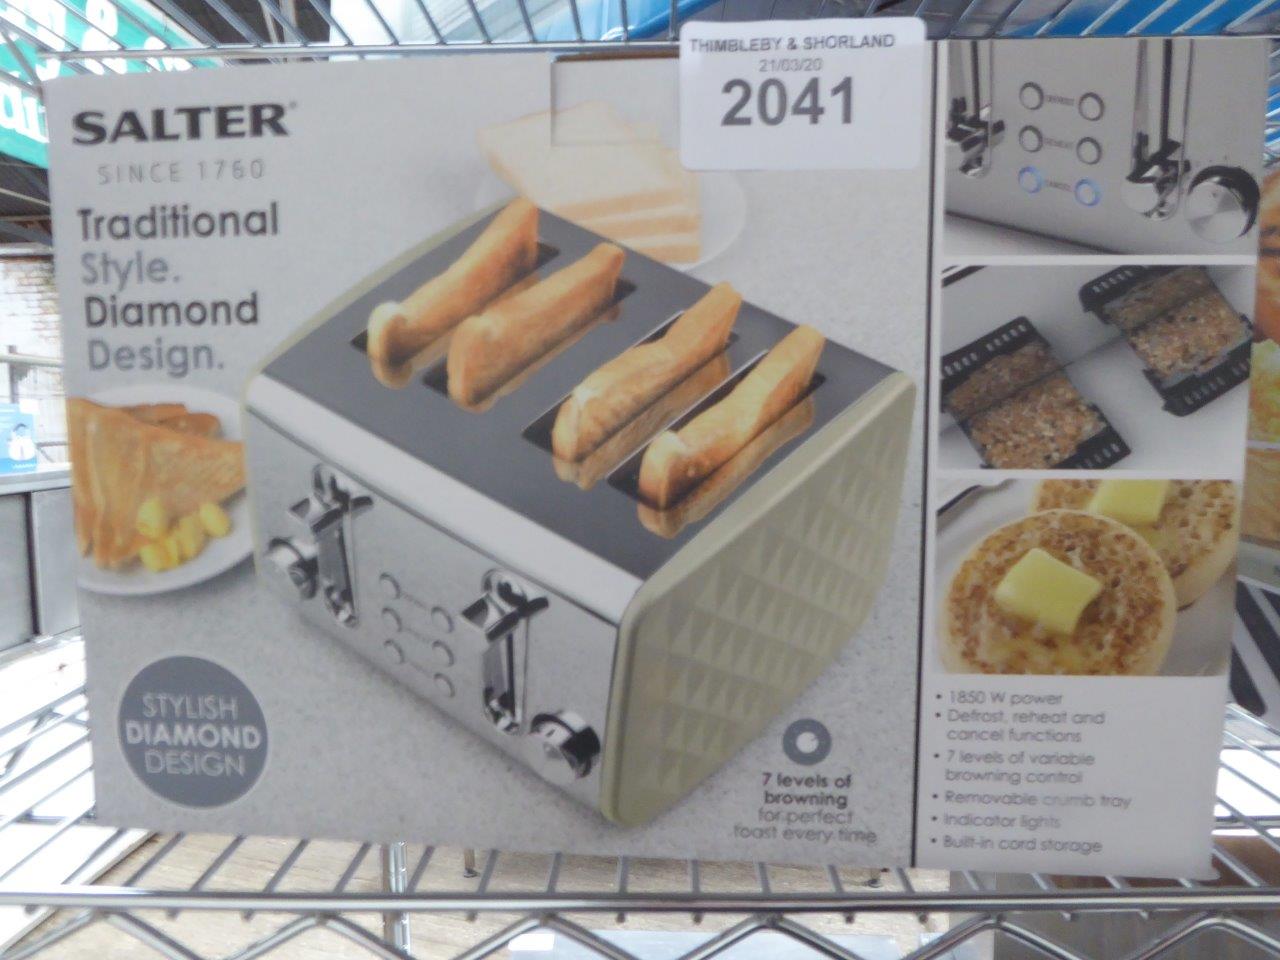 New Salter 4 slice toaster.